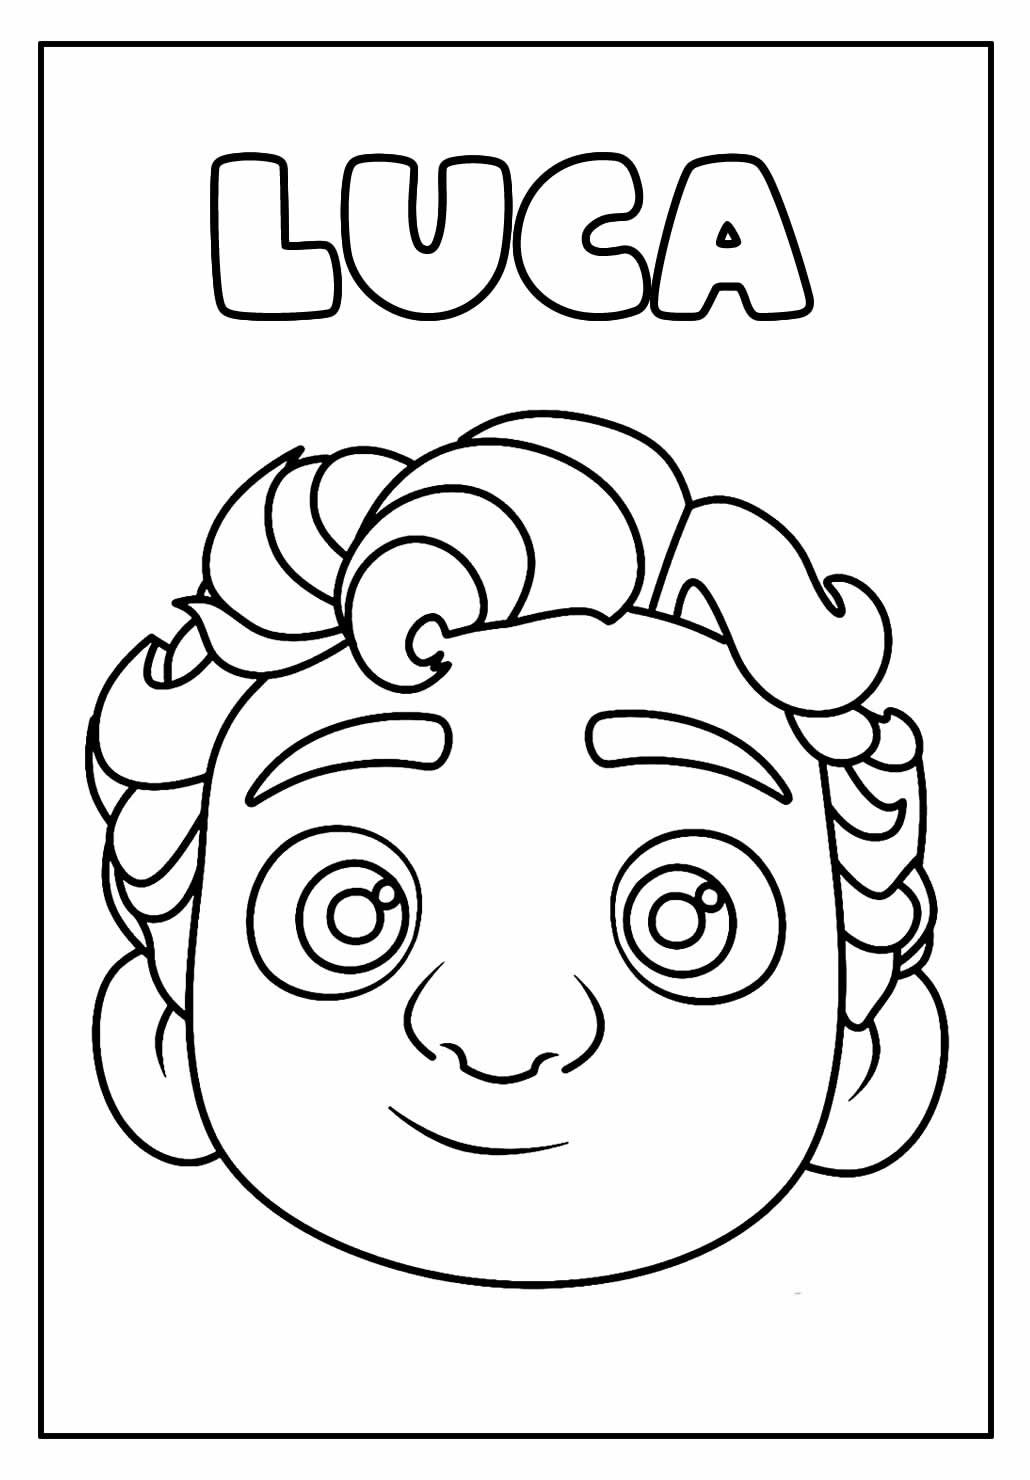 Desenho de Luca para colorir